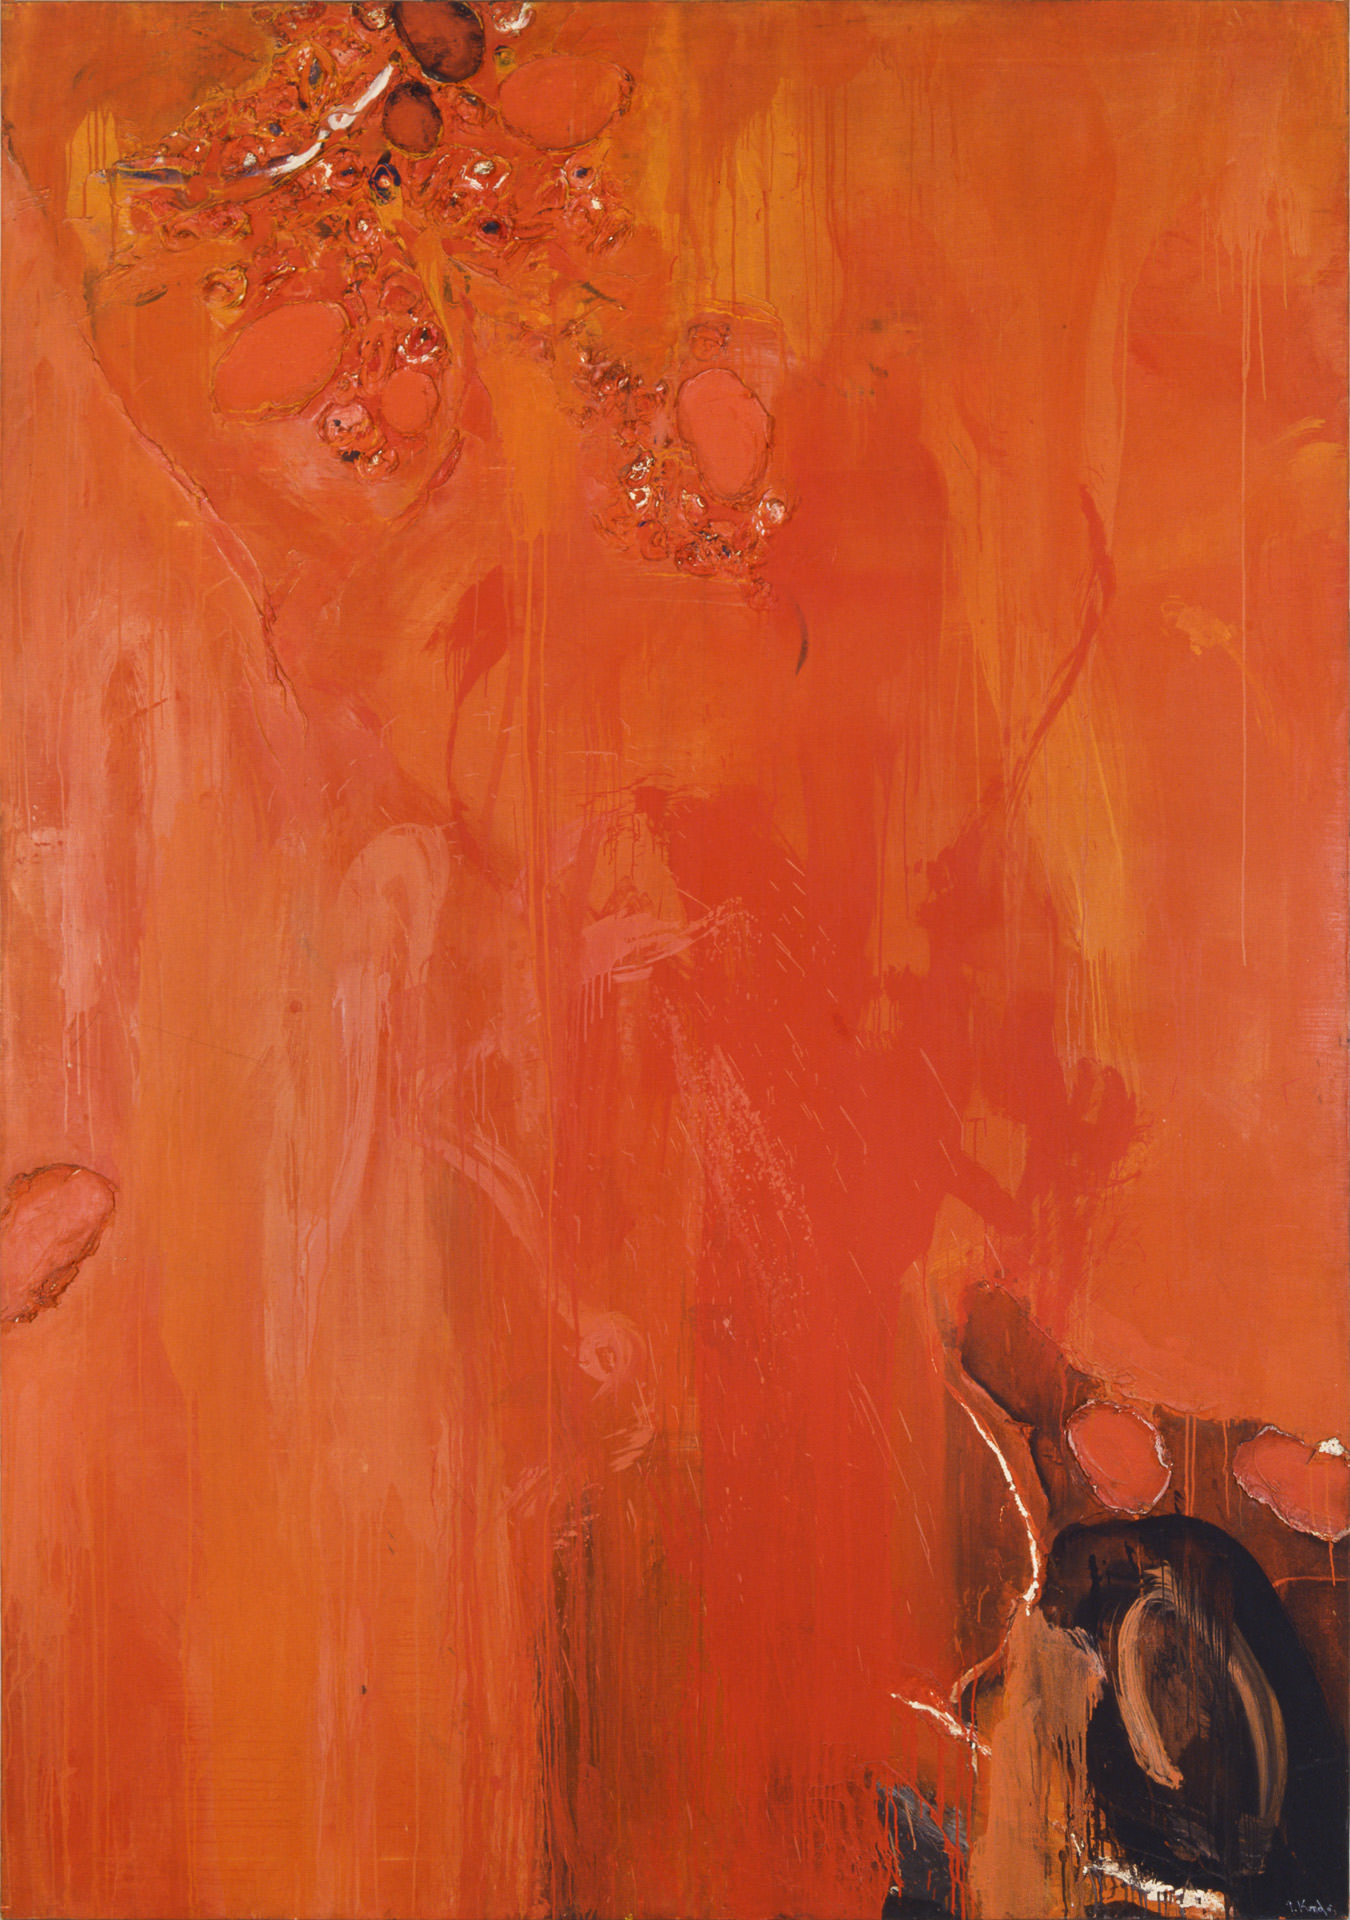 近藤竜男〈Red Image〉, 油彩・カンヴァス, 258.8×182.1, 日本橋画廊（ニューヨーク）個展, 1962